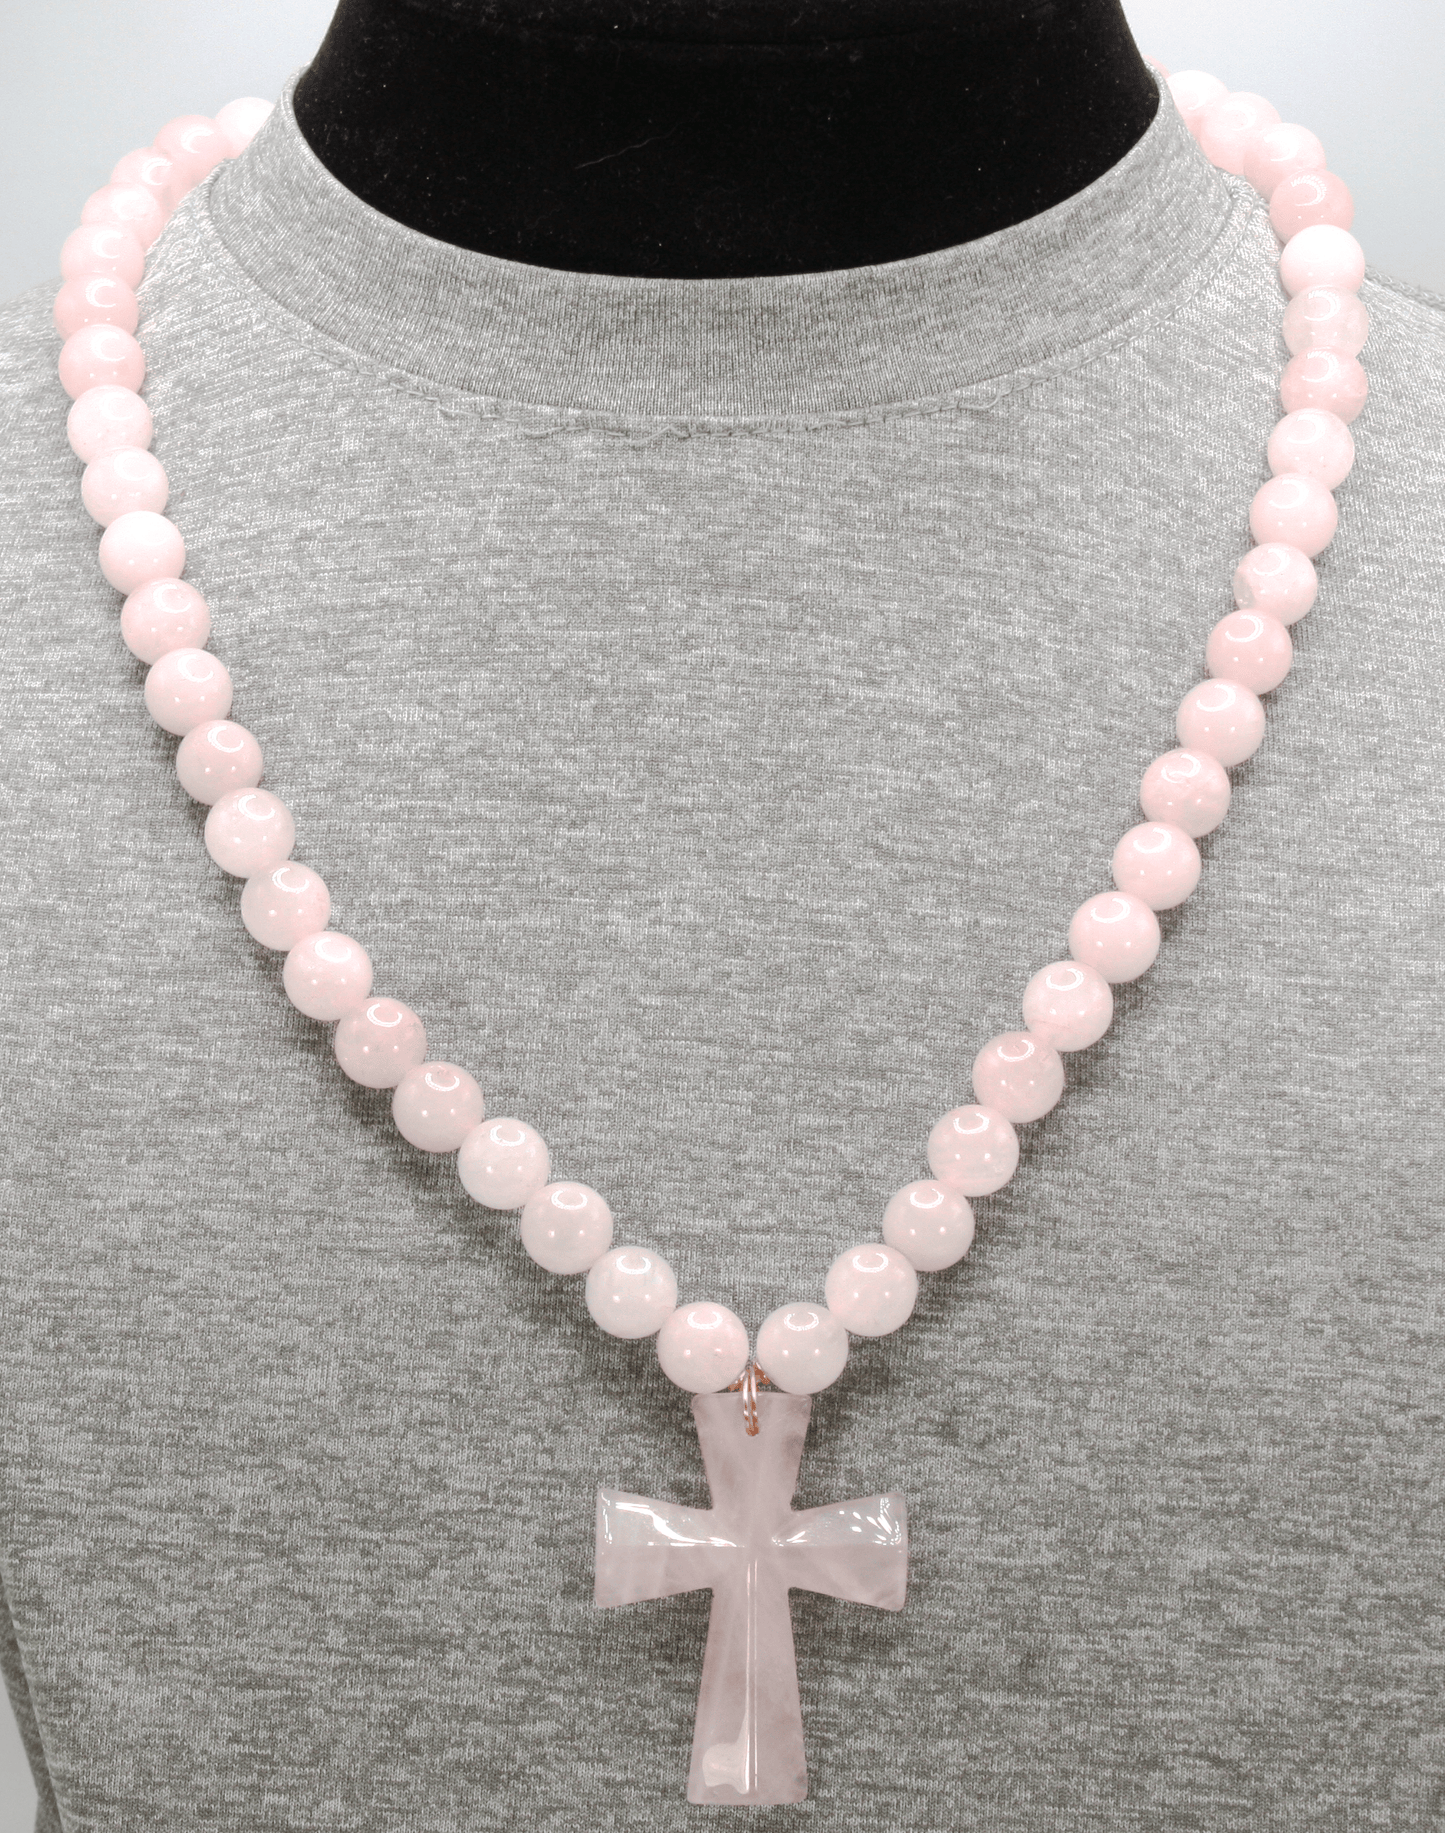 Genuine Rose Quartz Necklace with Rose Quartz Cross - Gift for Men/Woman - Spiritual Accessories - Religious Symbol